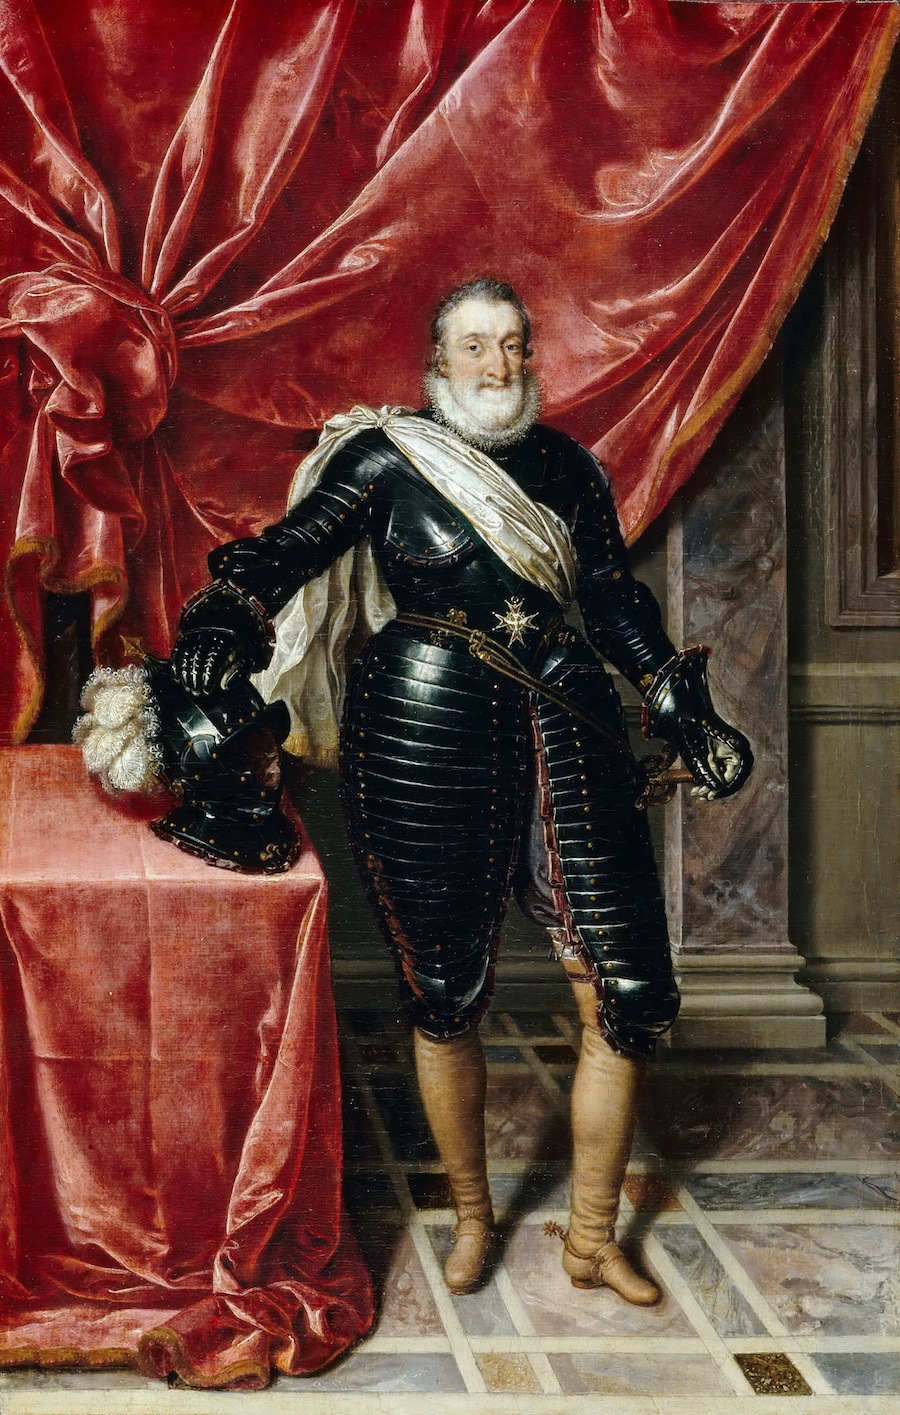 Henri IV, Frans Porbus) dit le Jeune, né à Anvers vers 1569-1570, mort à Paris en 1622, est un peintre flamand